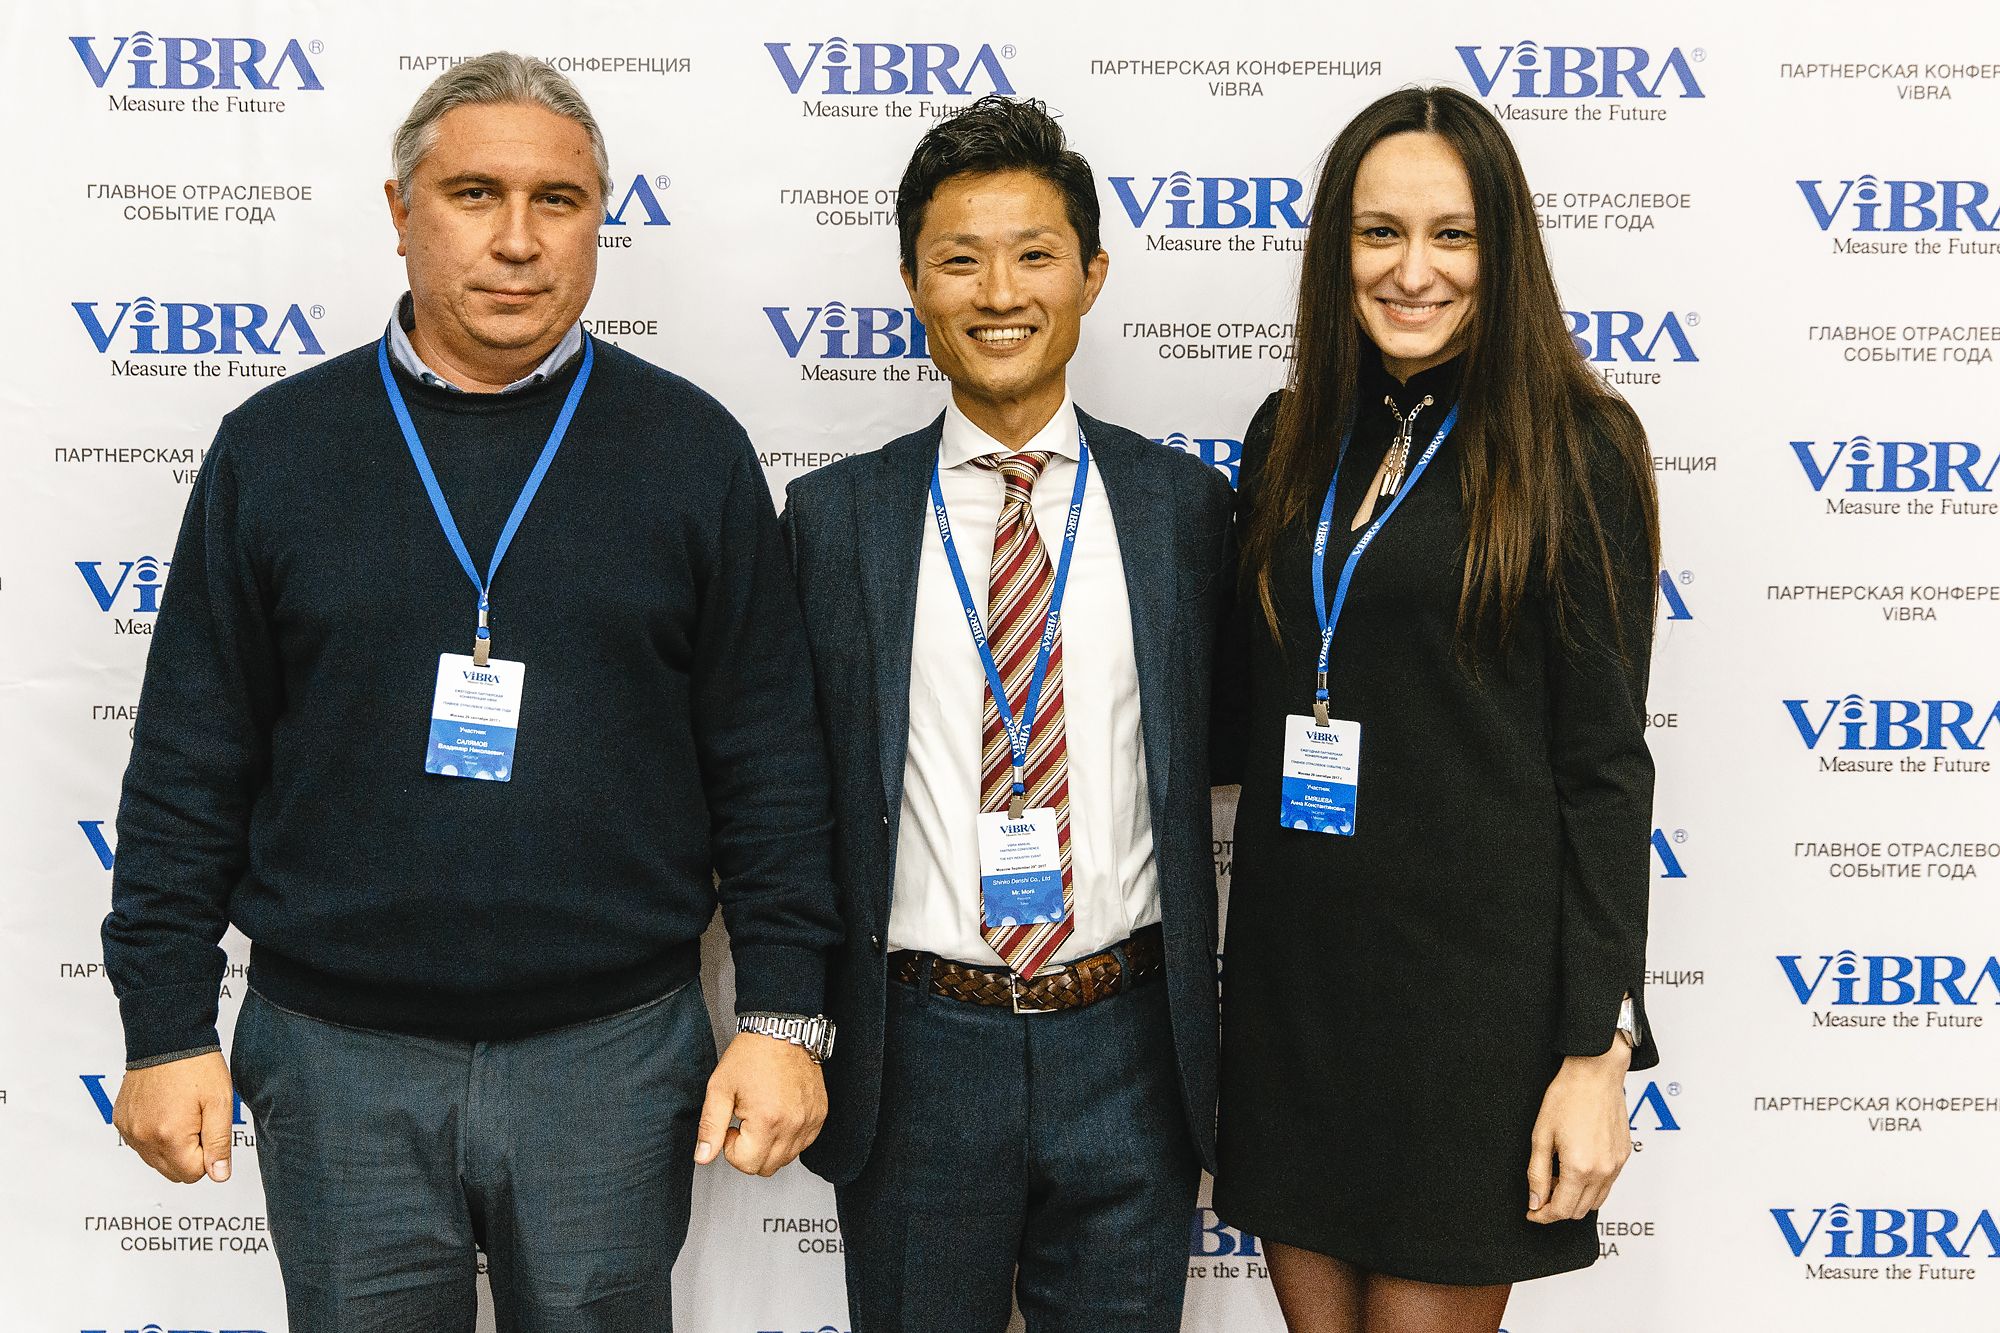 Партнерская Конференция ViBRA-2017